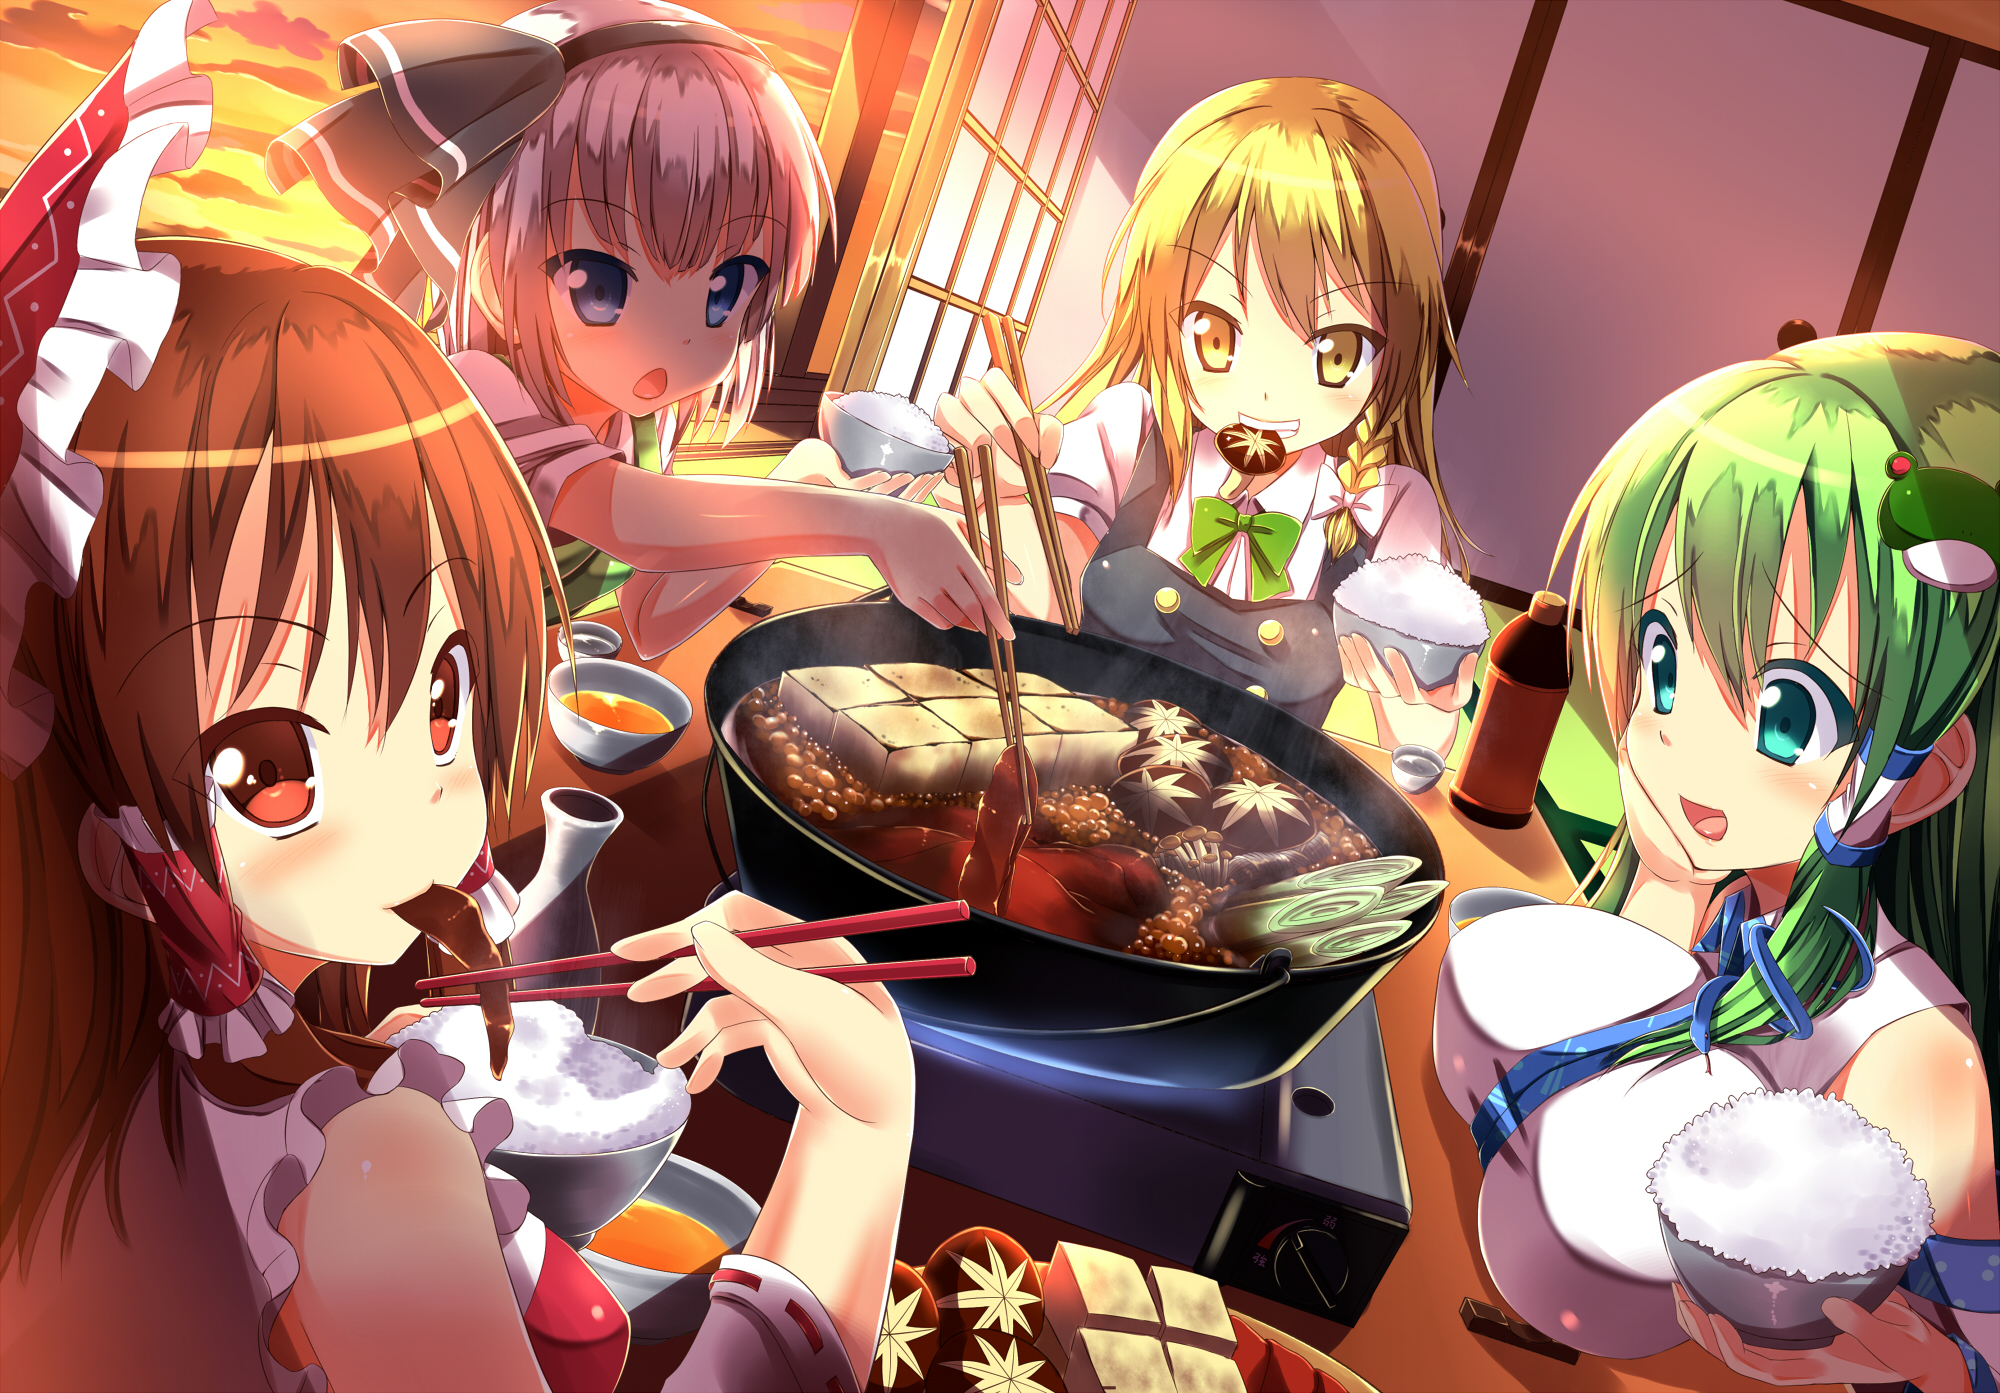 Descarga gratuita de fondo de pantalla para móvil de Animado, Touhou, Youmu Konpaku, Sanae Kochiya, Reimu Hakurei, Marisa Kirisame.